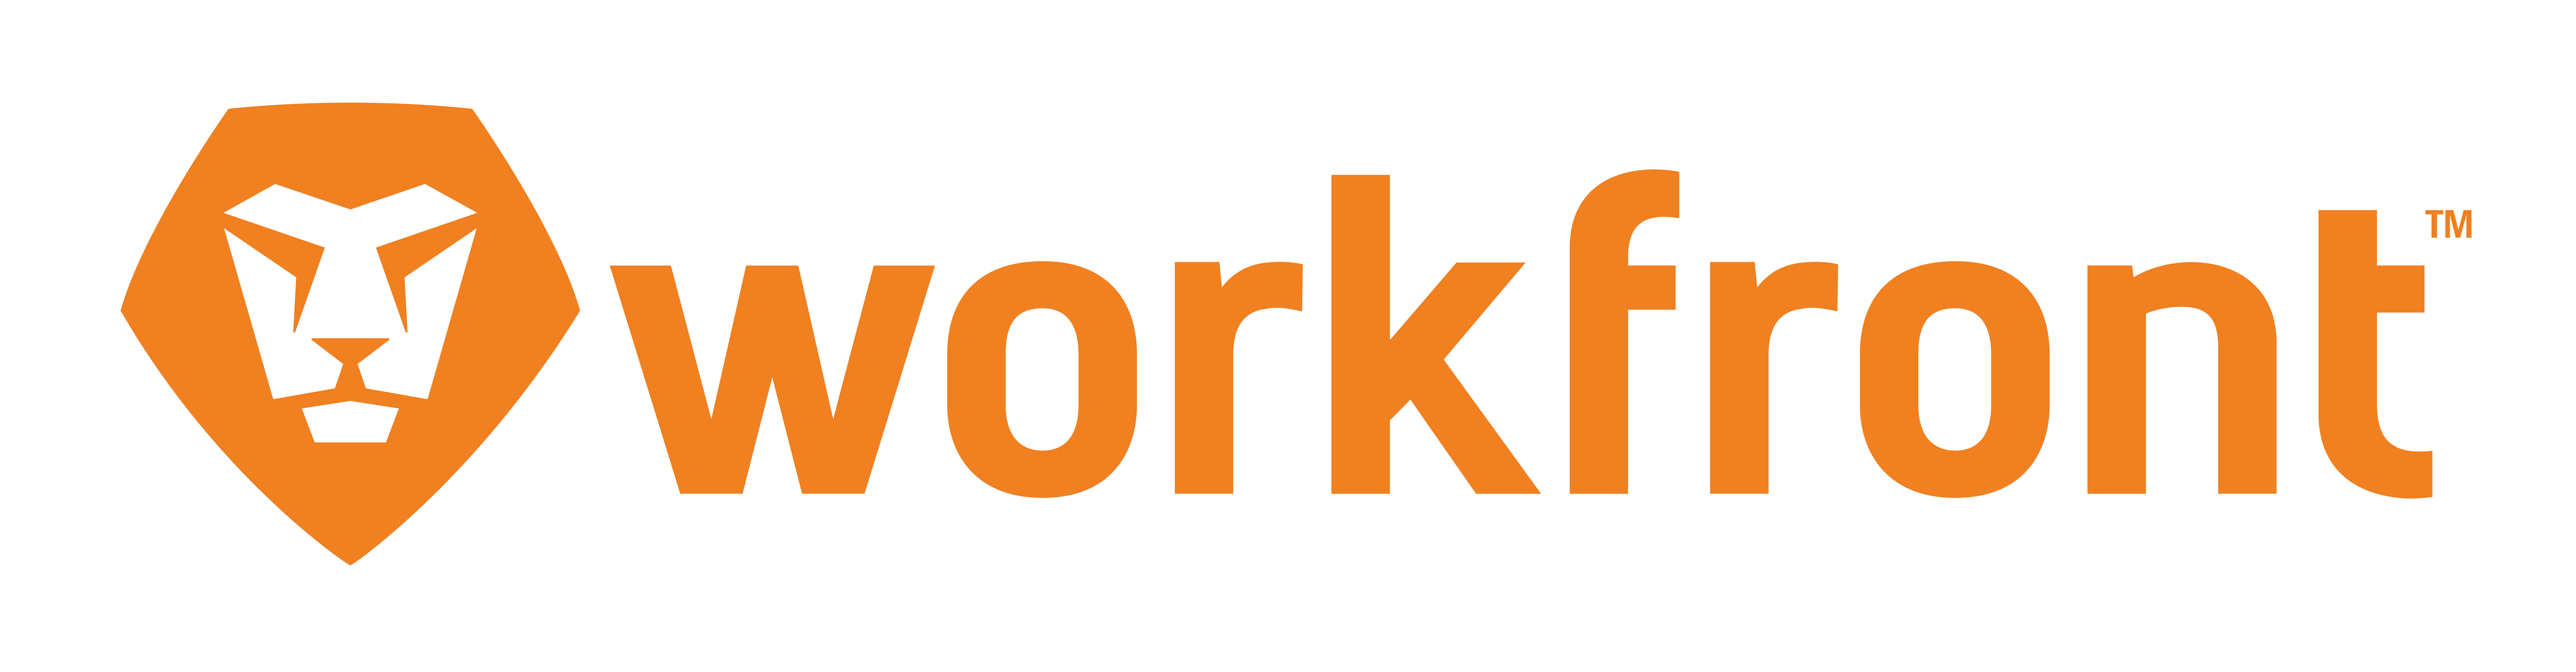 Adobe Workfront logo, one of the best work management software